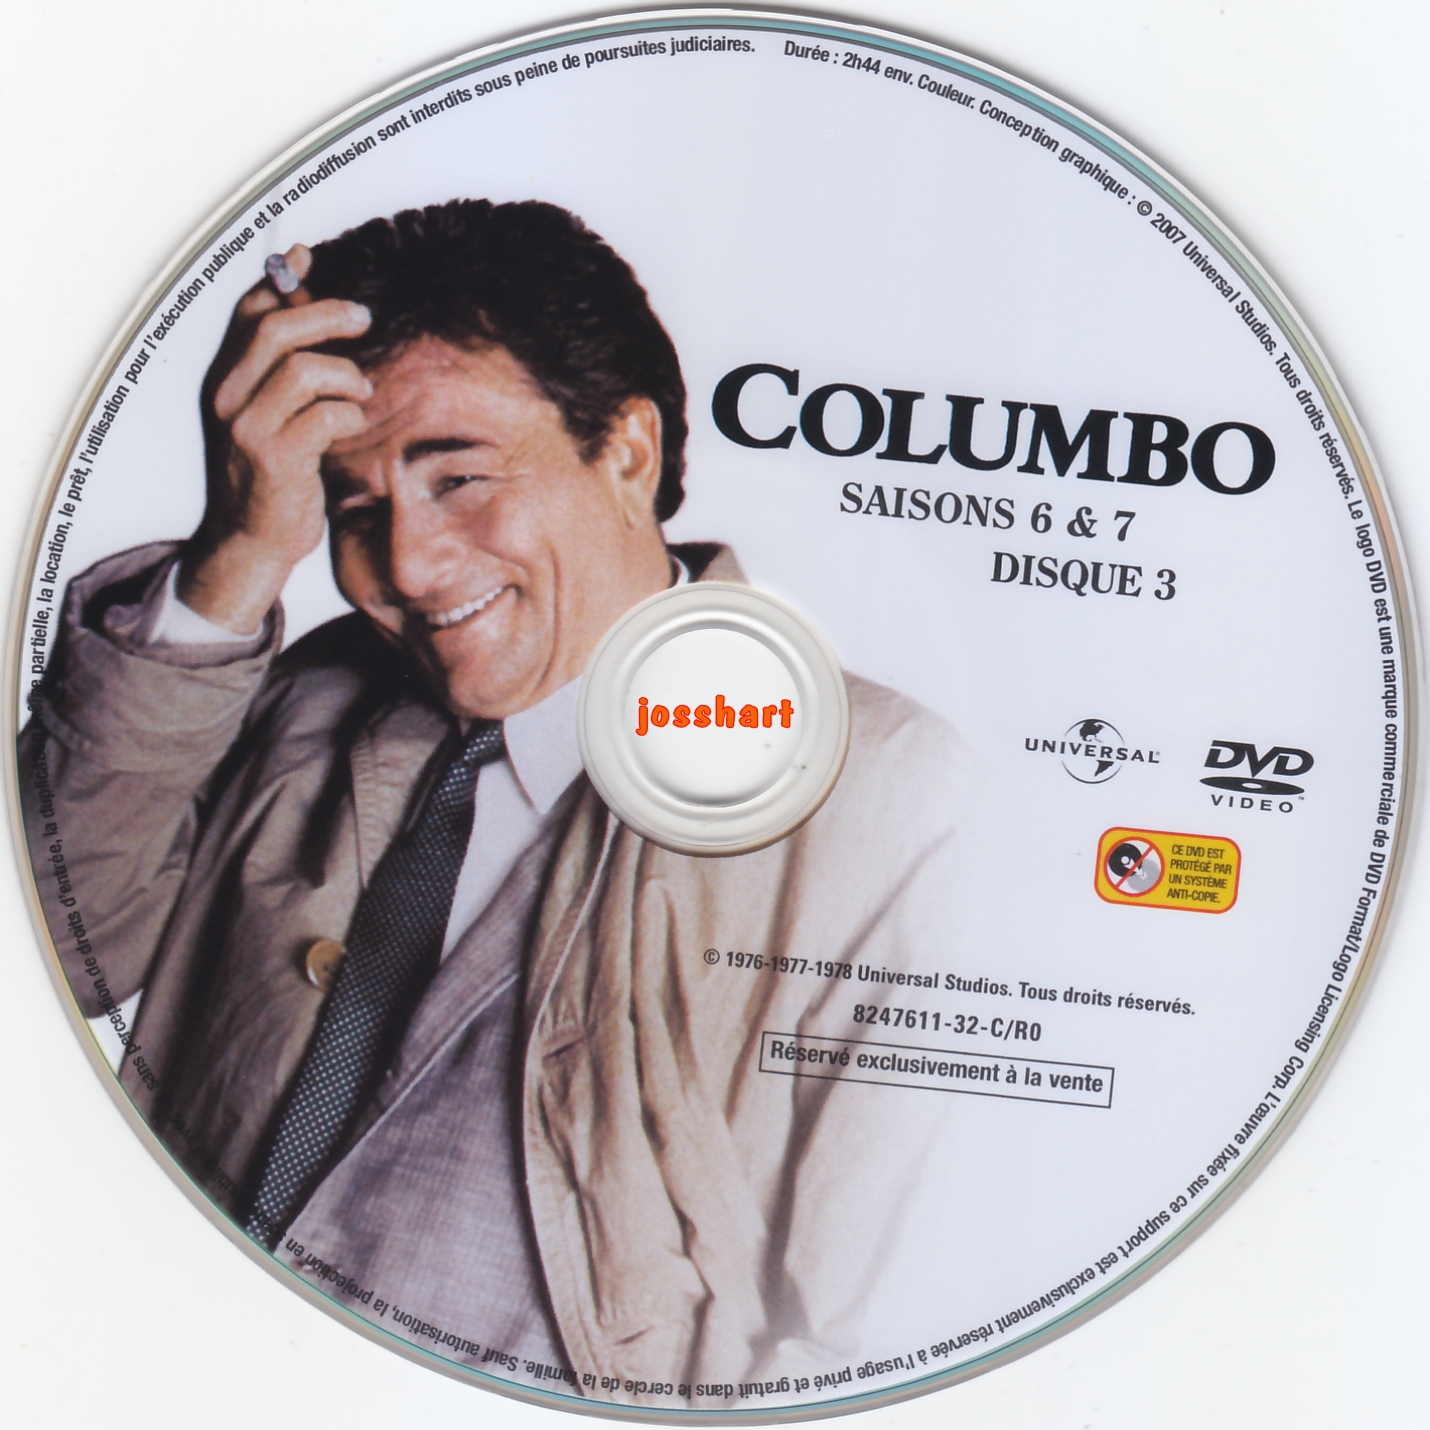 Columbo S6 et 7 DISC3